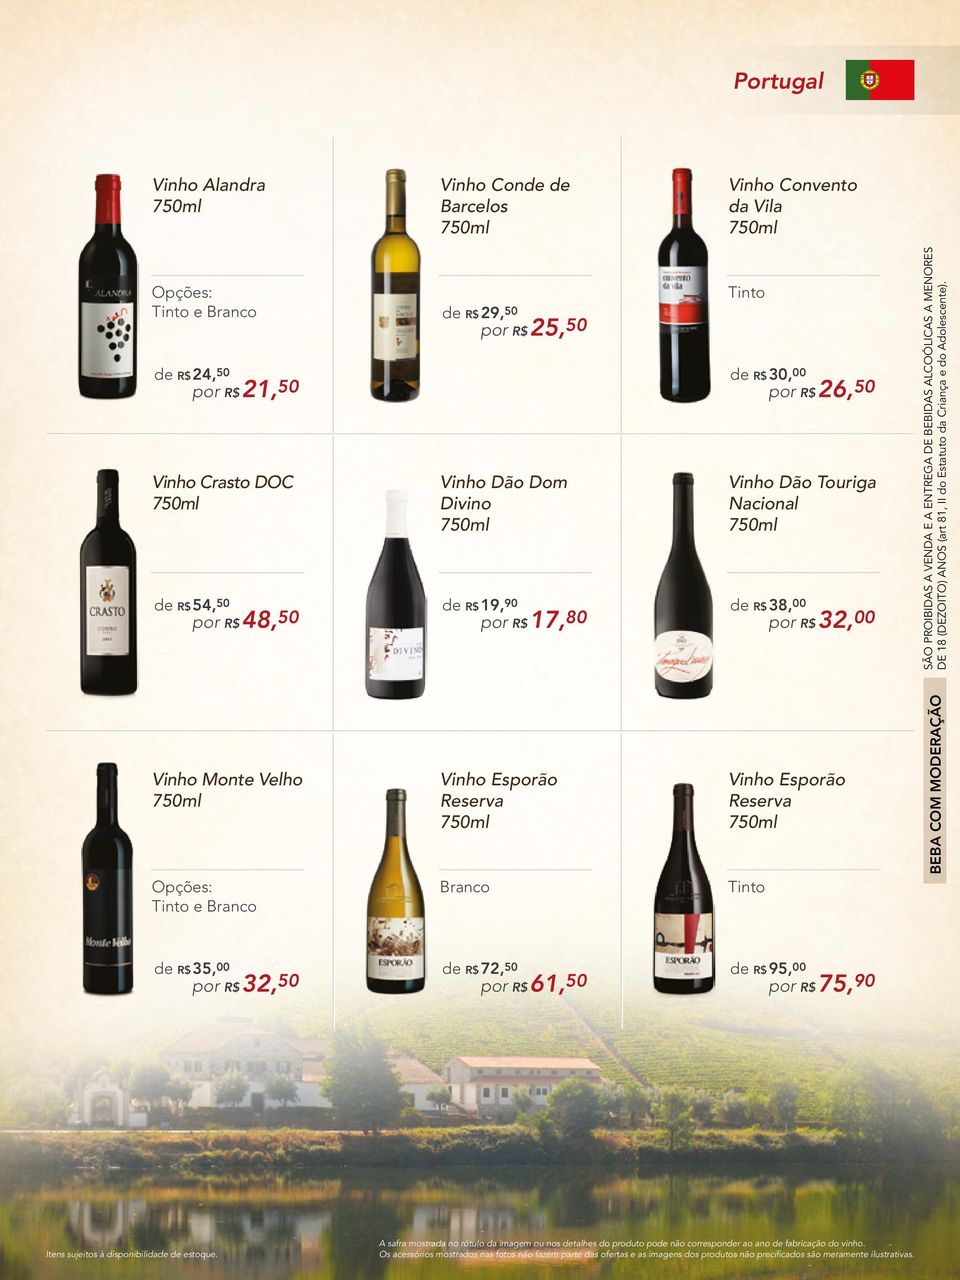 Monte Velho Vinho Esporão Reserva Vinho Esporão Reserva e Branco Branco de R$ 35,00 de R$ 72,50 de R$ 95,00 por